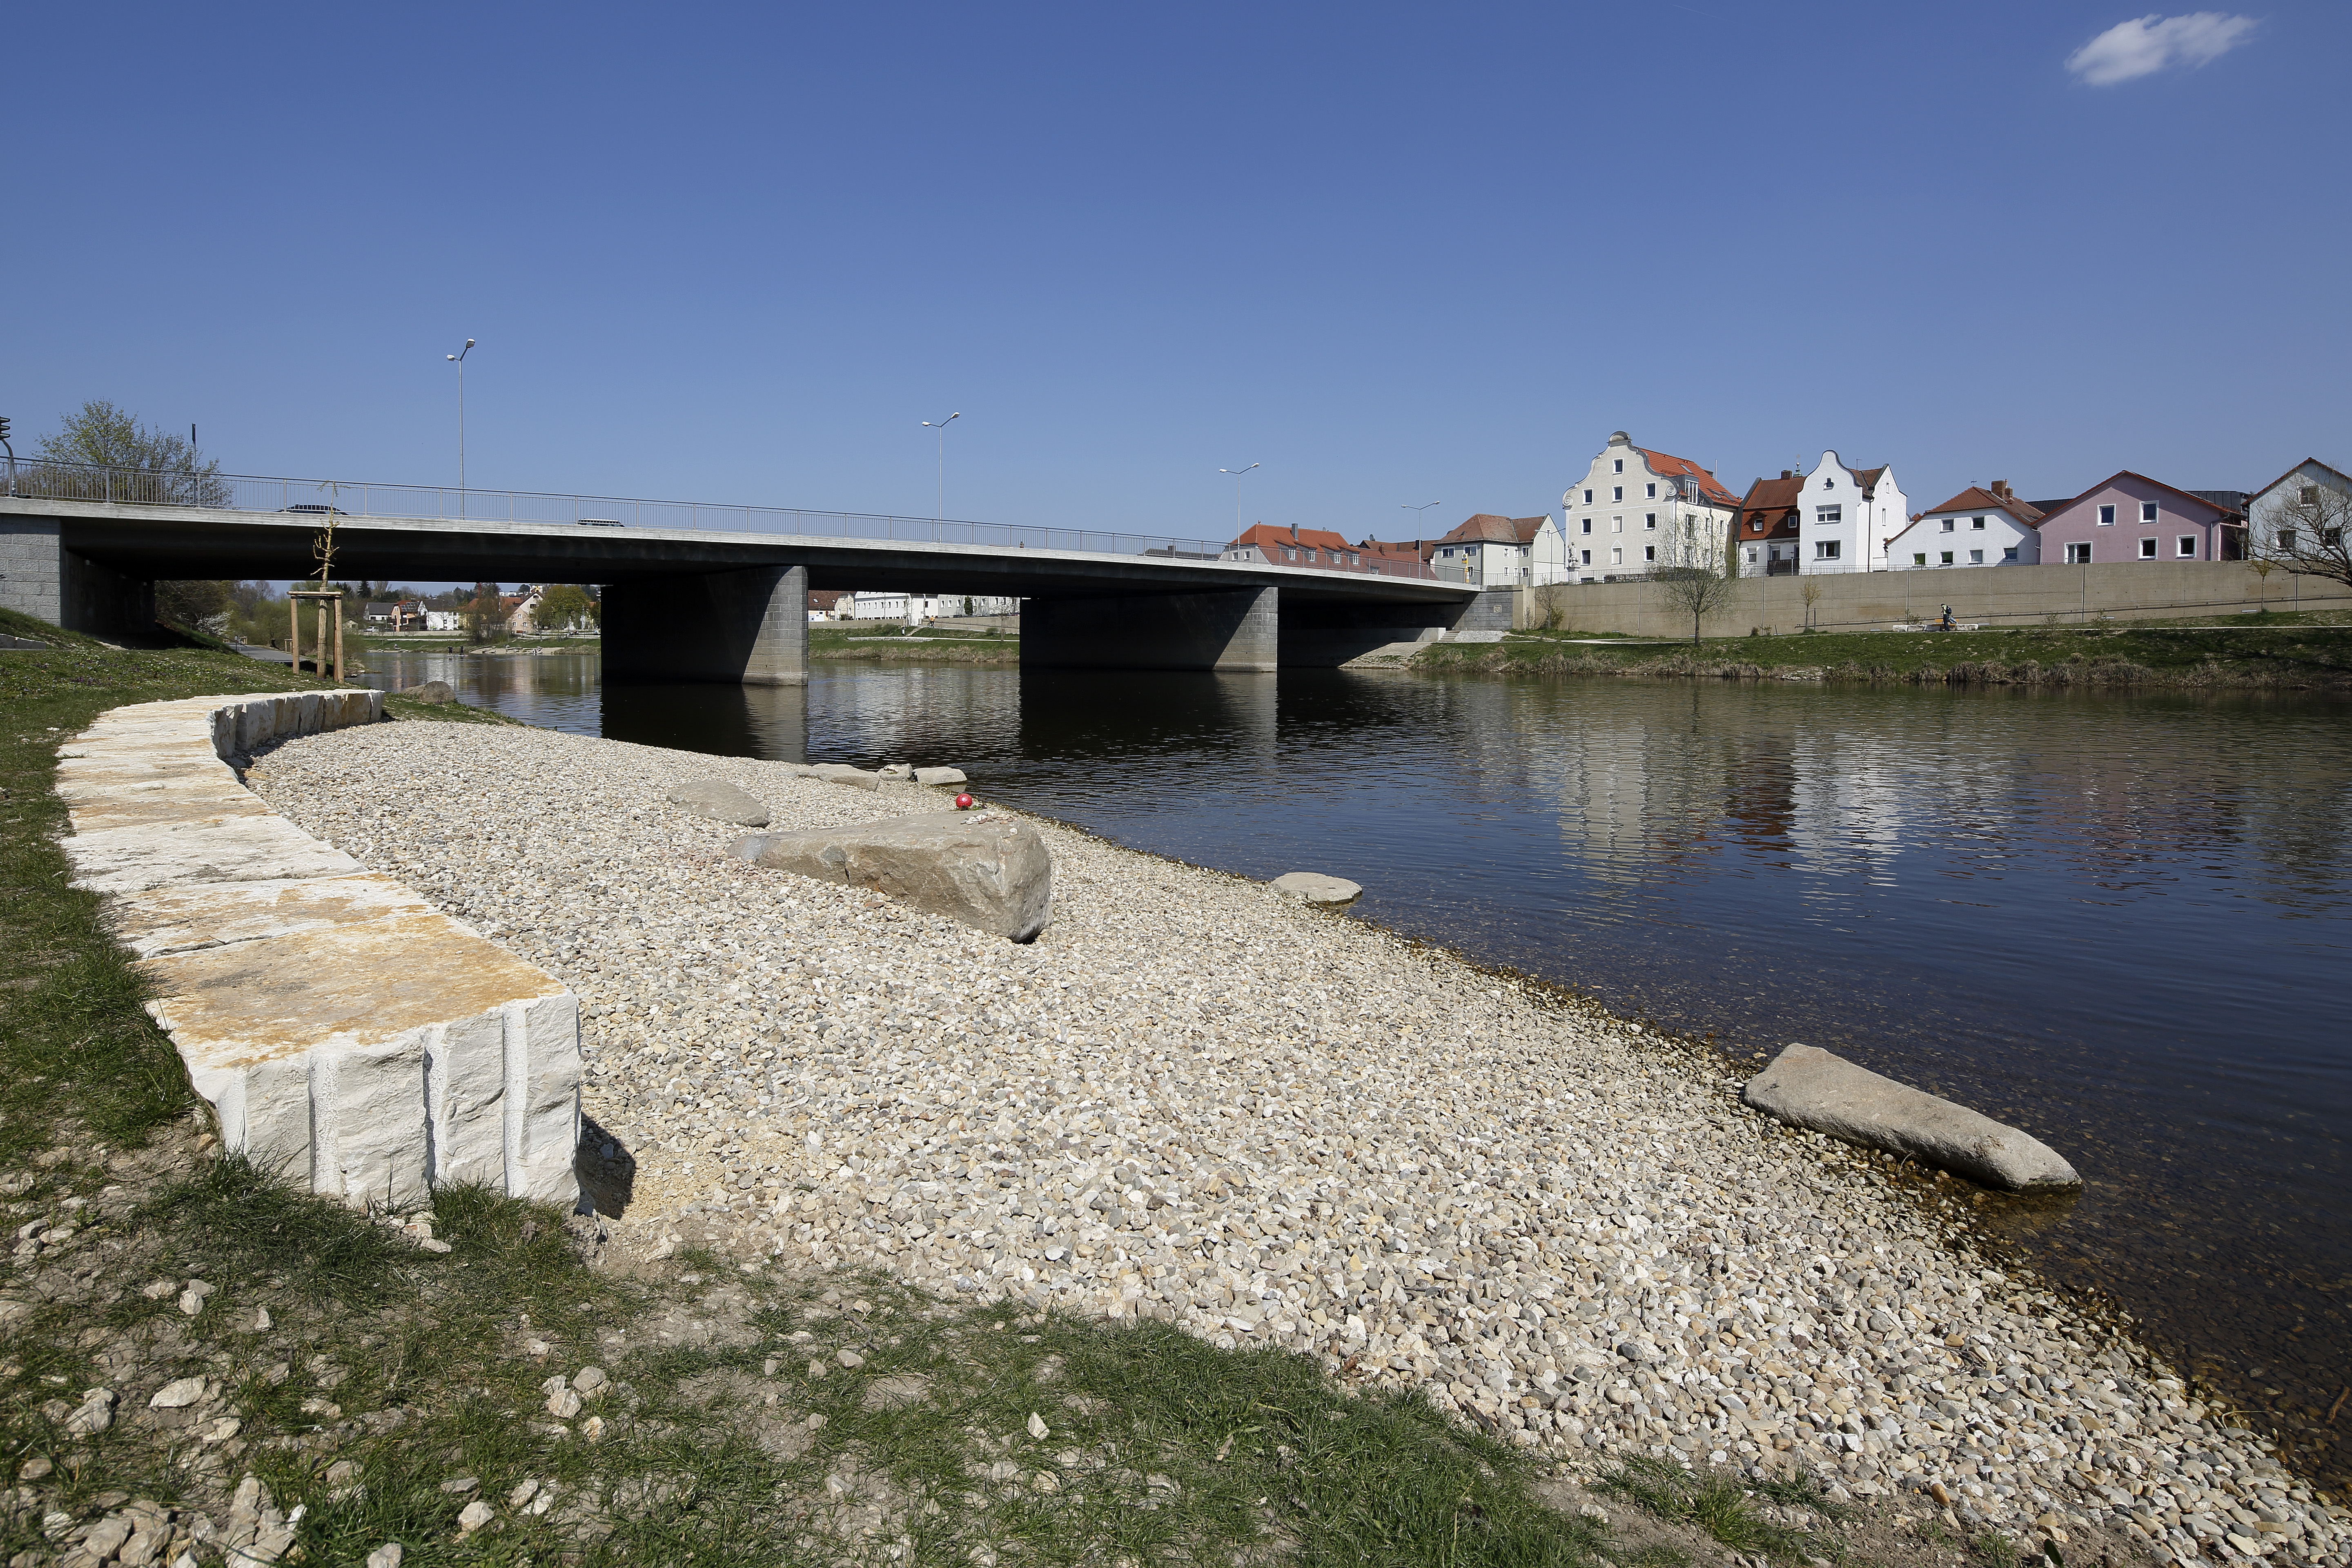 Rechts der Fluß Regen, darüber die Reinhausener Brücke und einer Häuserreihe am rechten Ufer, in Bildmitte eine Kiesbank mit bogenförmig aneinandergereihten Steinquadern zum Sitzen bei strahlend blauem Himmel